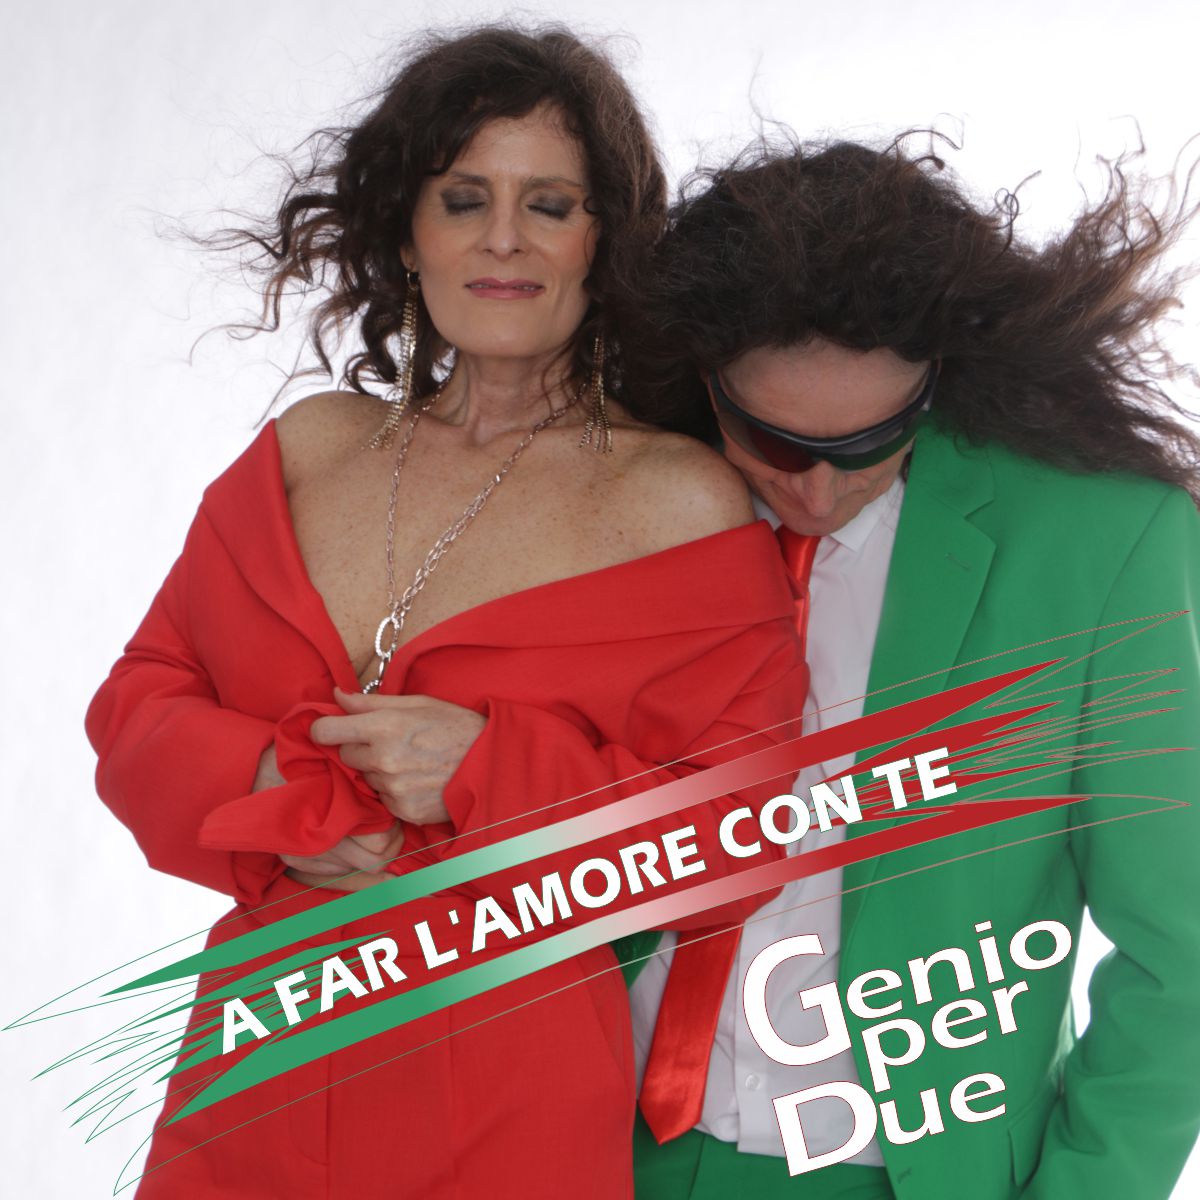 Genio per Due - A FAR LAMORE CON TE - Frontcover.jpg